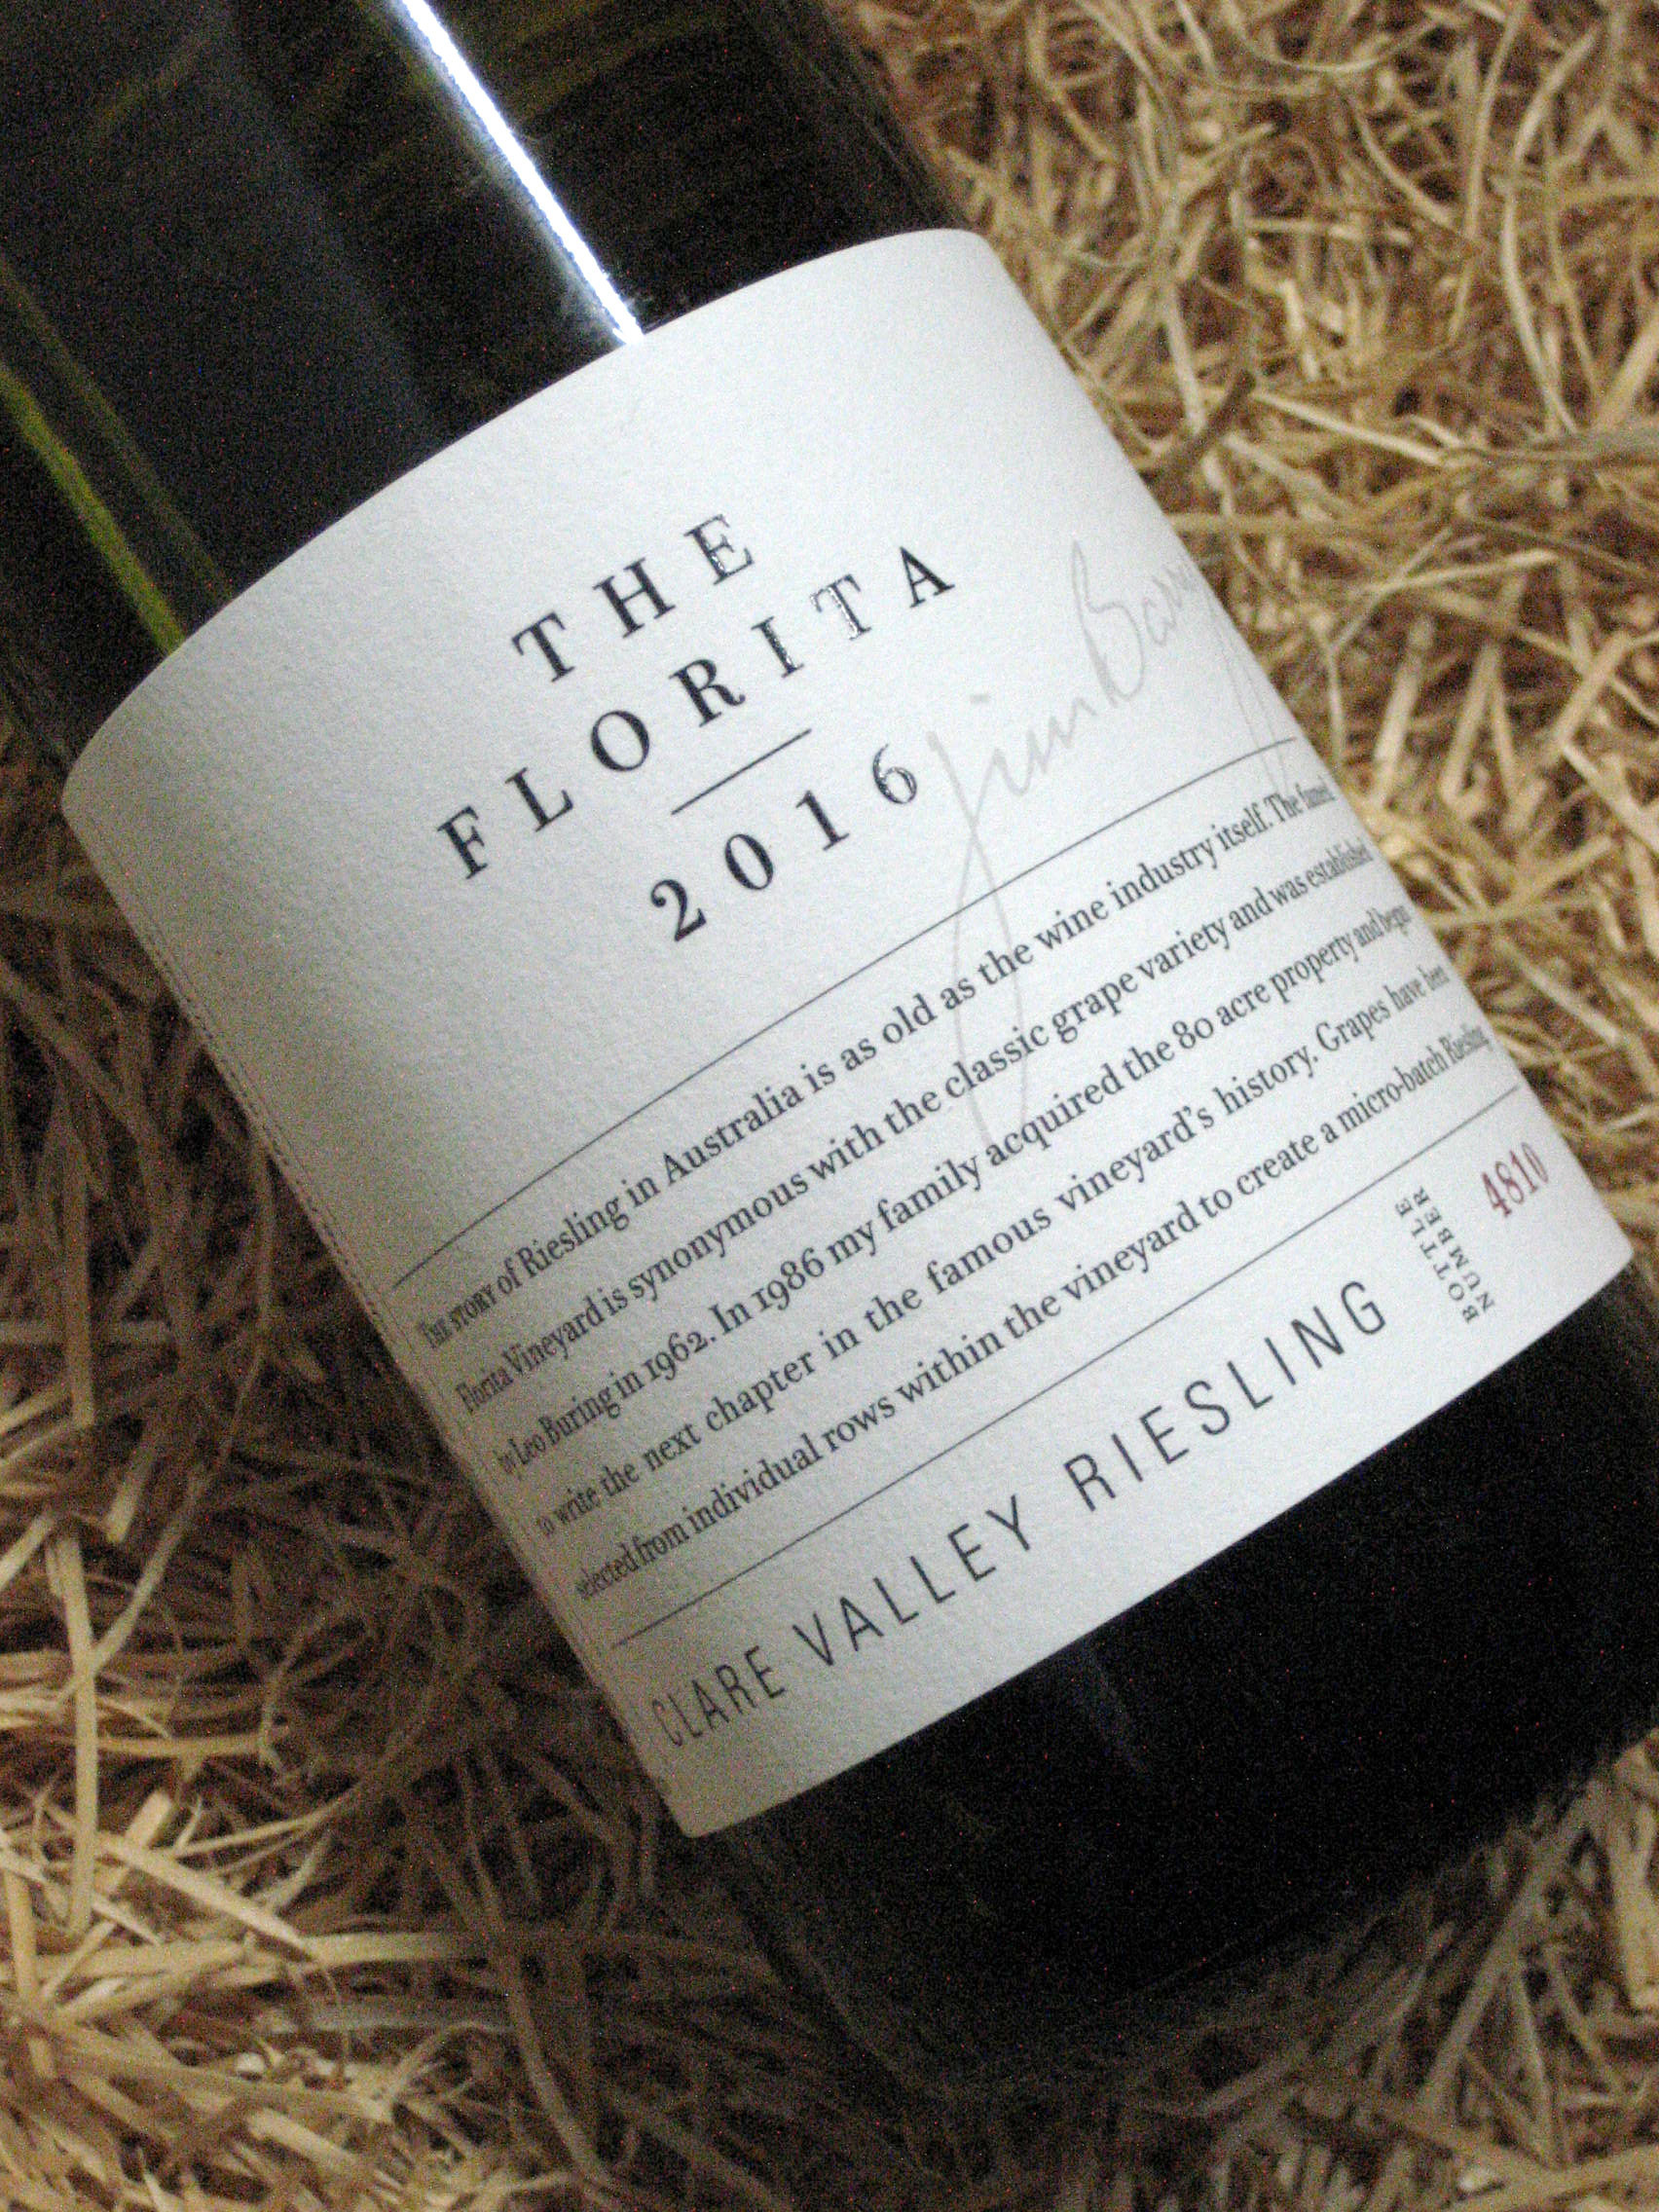 Gọi tên 4 loại rượu vang ngon nhất niềm Nam nước Úc - The Florita Riesling, thương hiệu Jim Barry, Thung lũng Clare